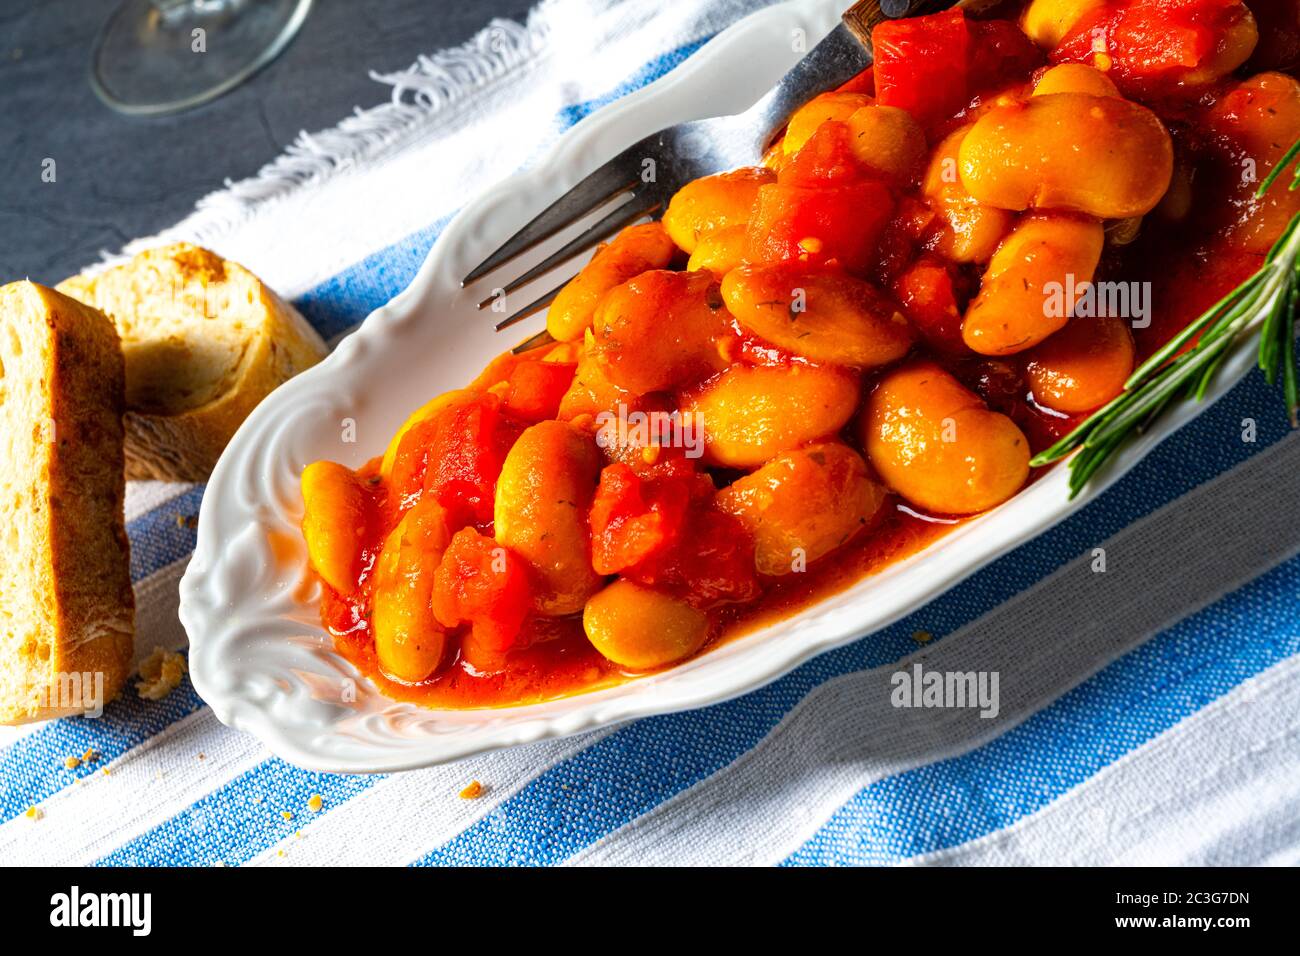 Gigantes Plaki - Baked beans in tomato sauce Stock Photo